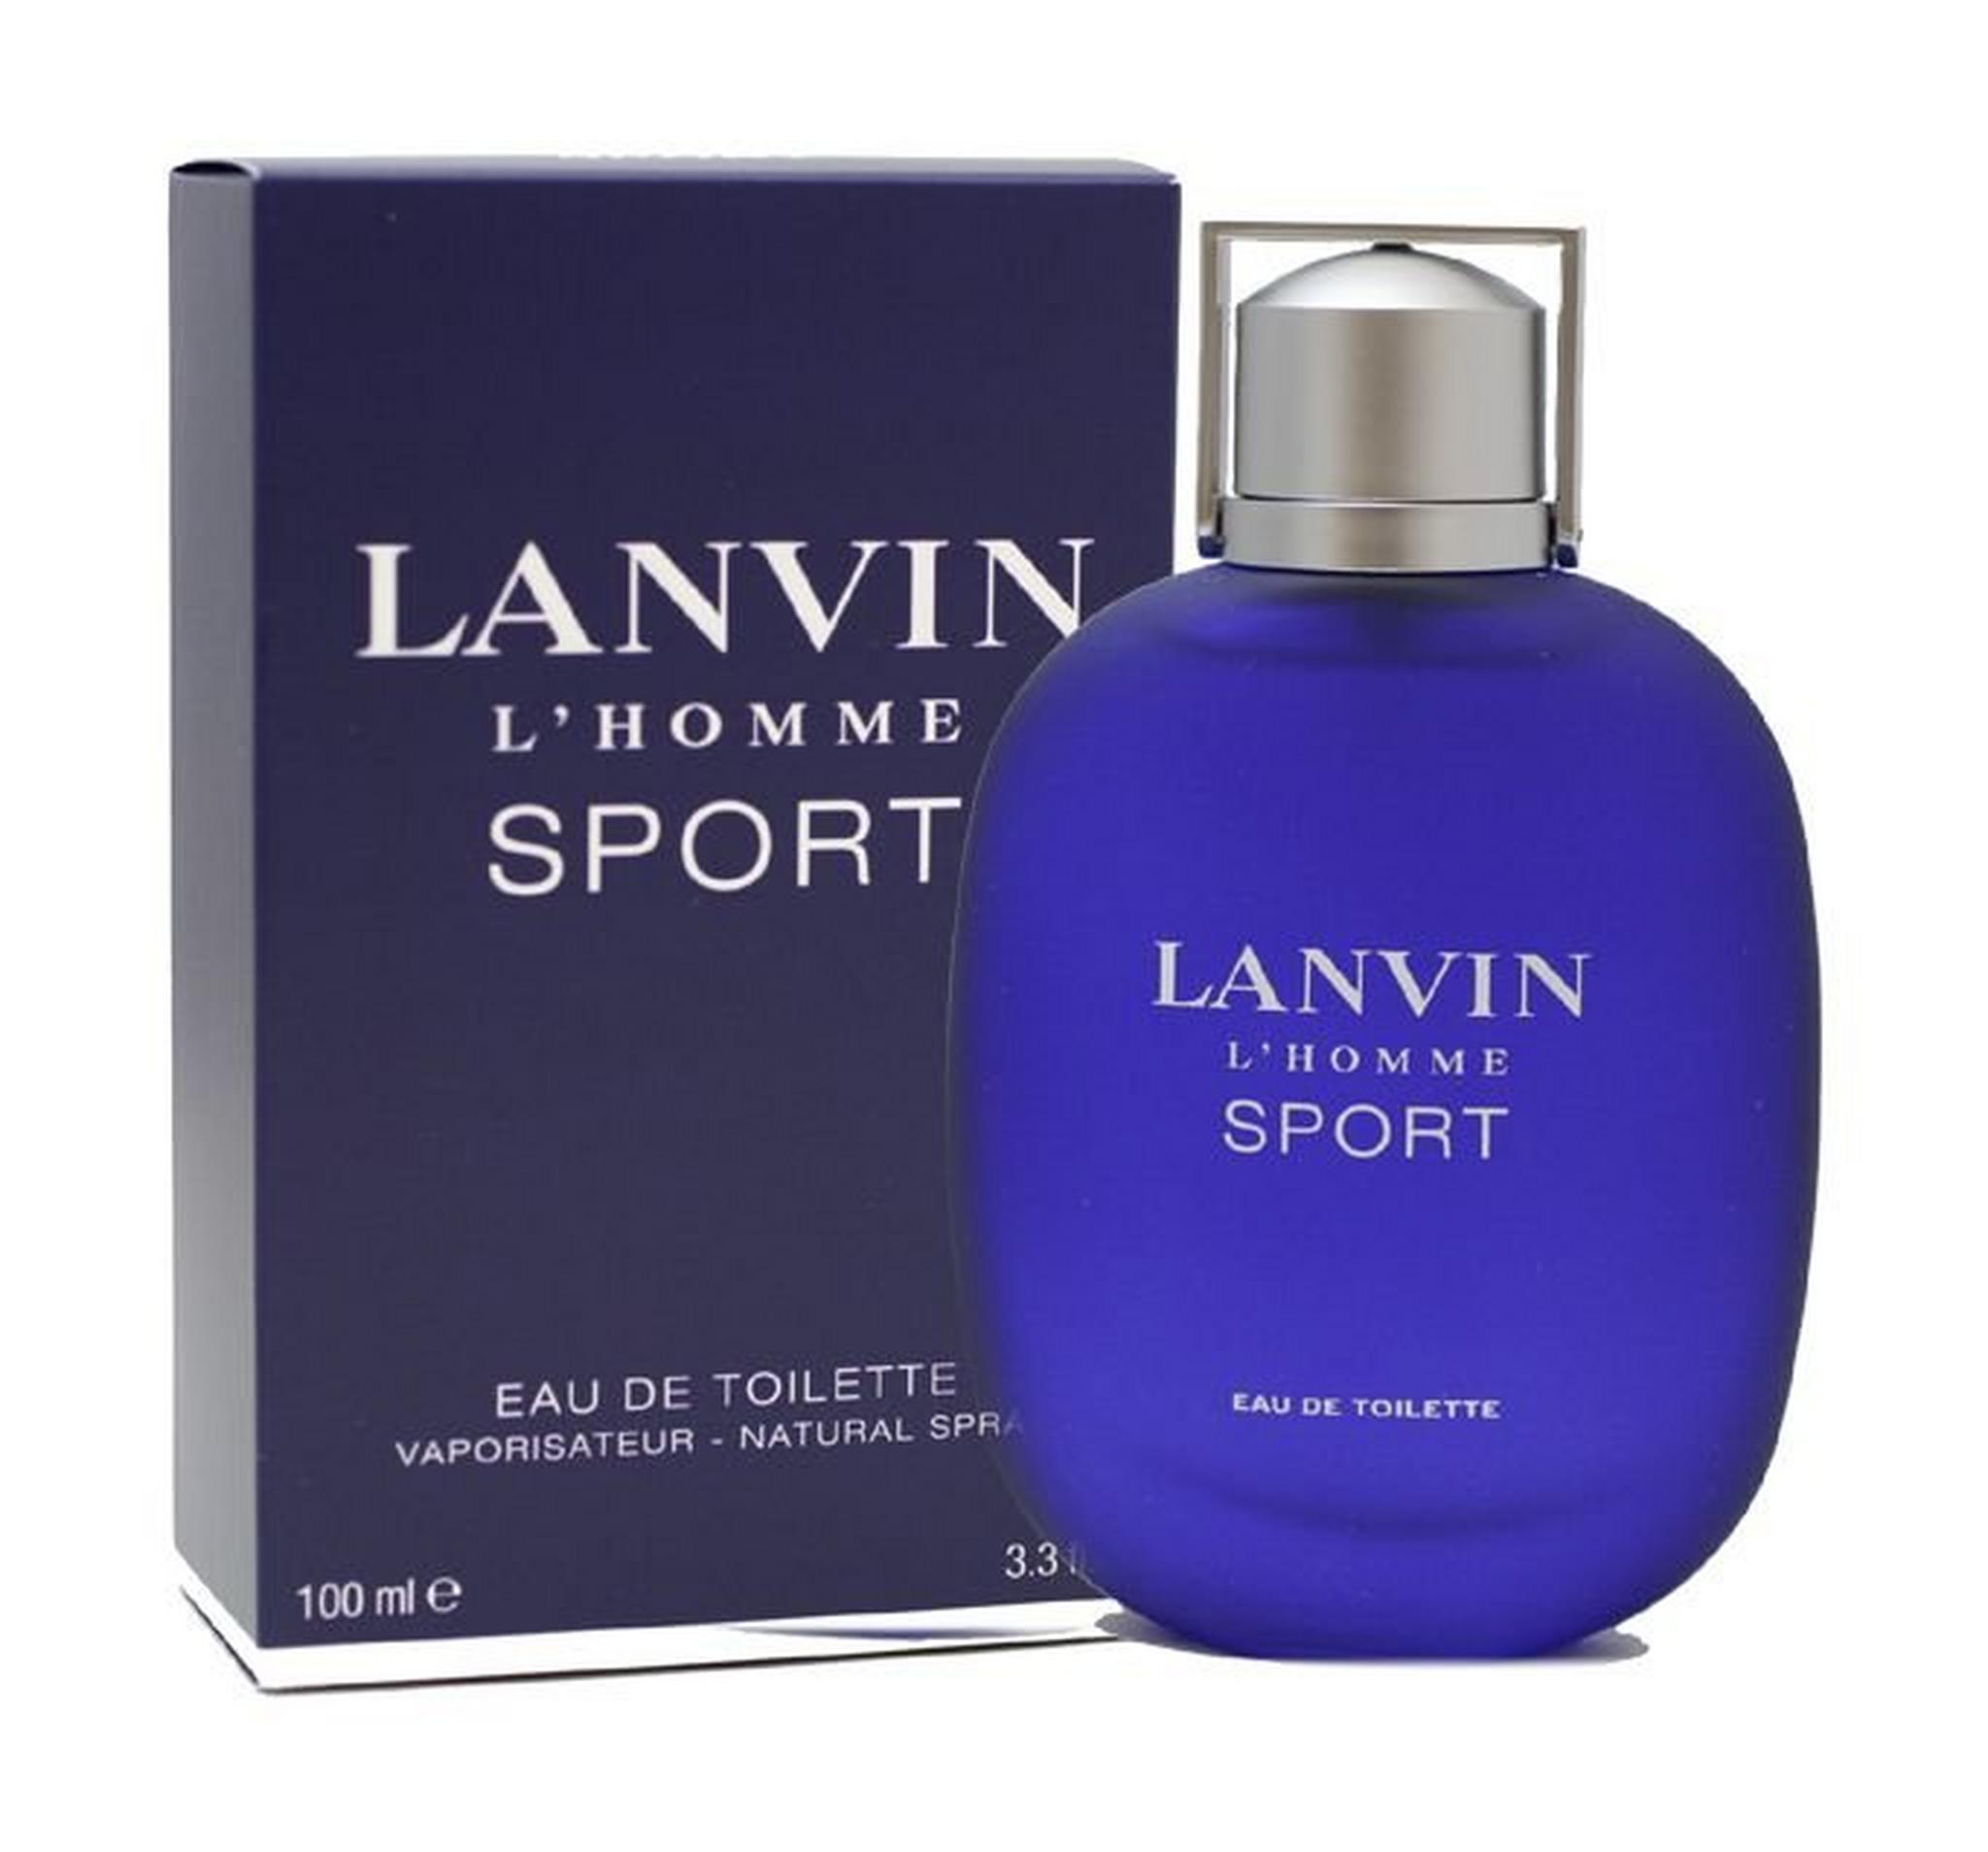 Lanvin L'Homme Sport by Lanvin for Men 100 mL Eau de Toilette